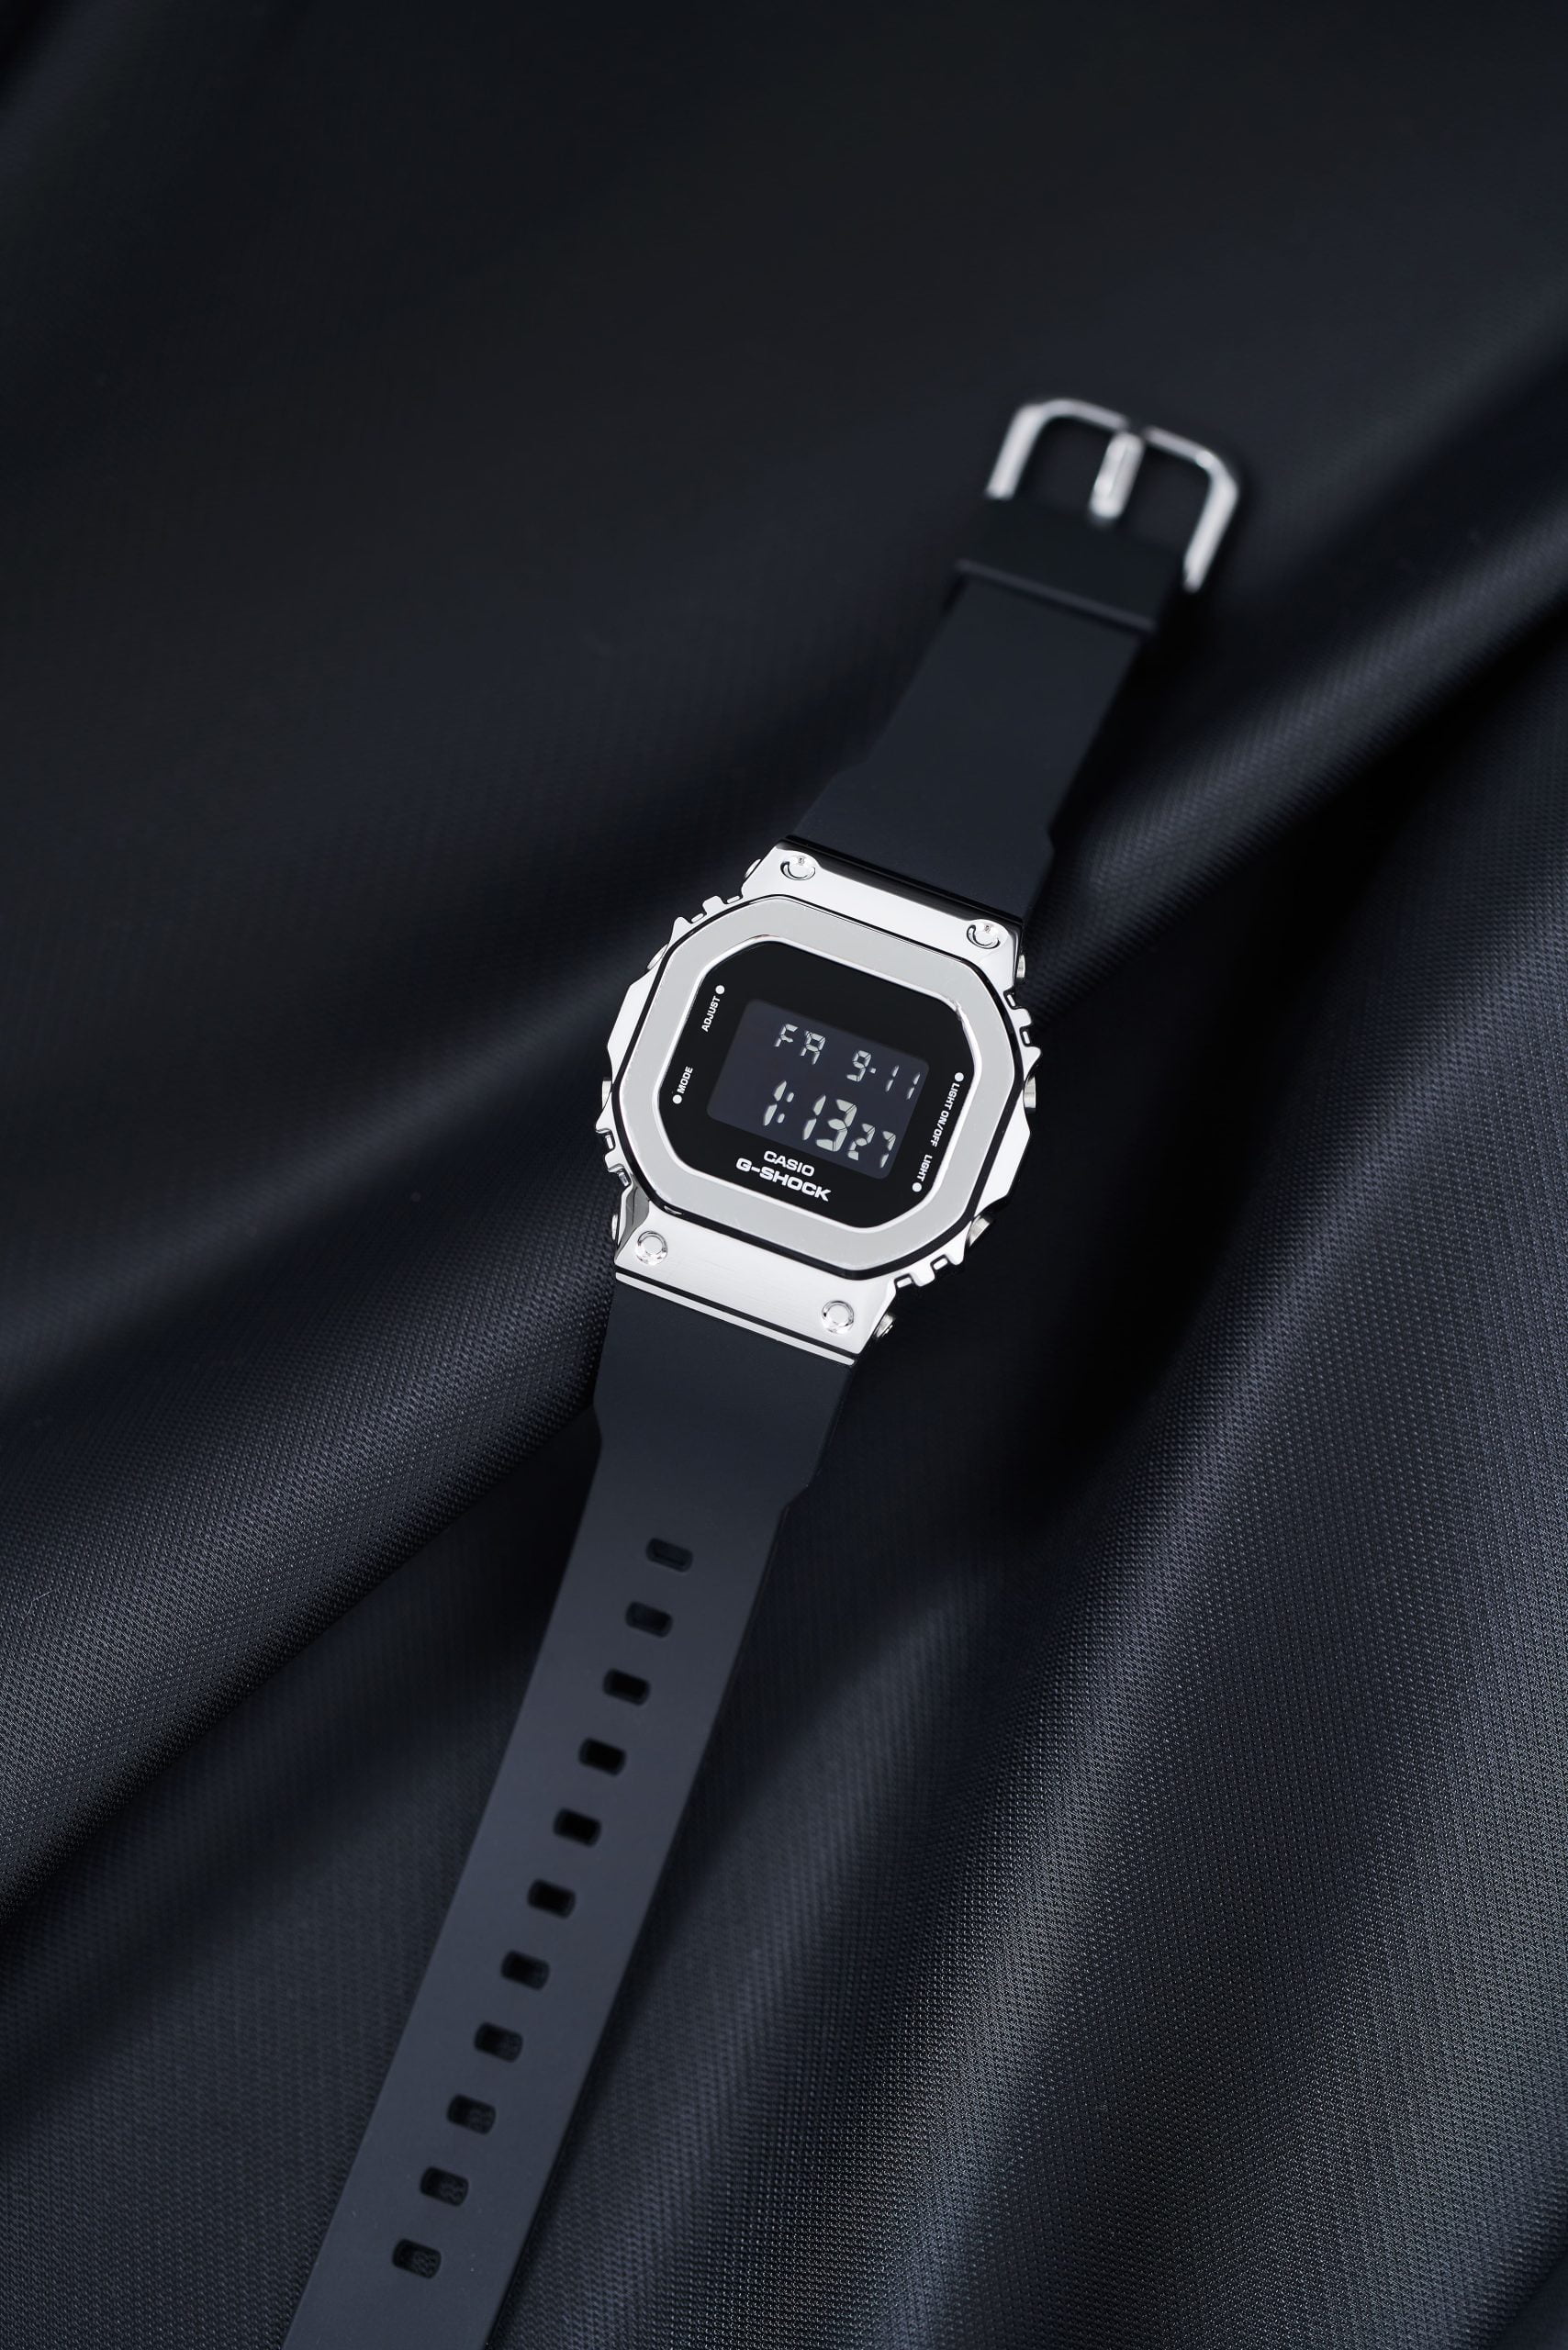 Đồng hồ G Shock nữ GM-S5600-1